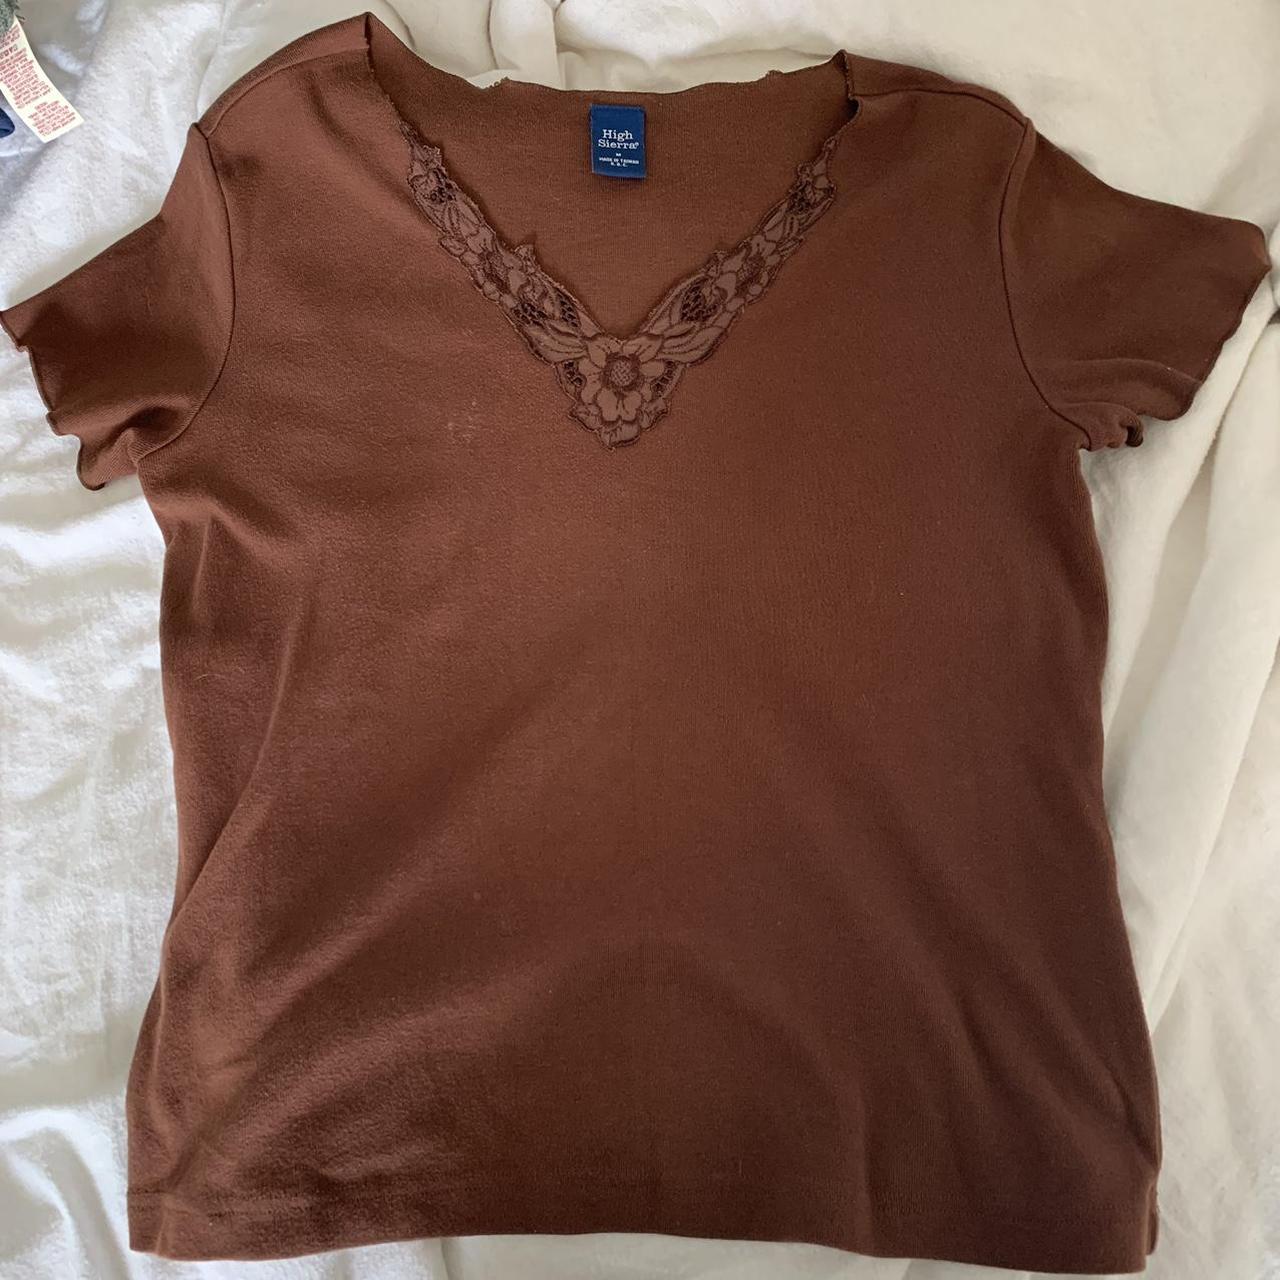 High Sierra Women's Brown Shirt